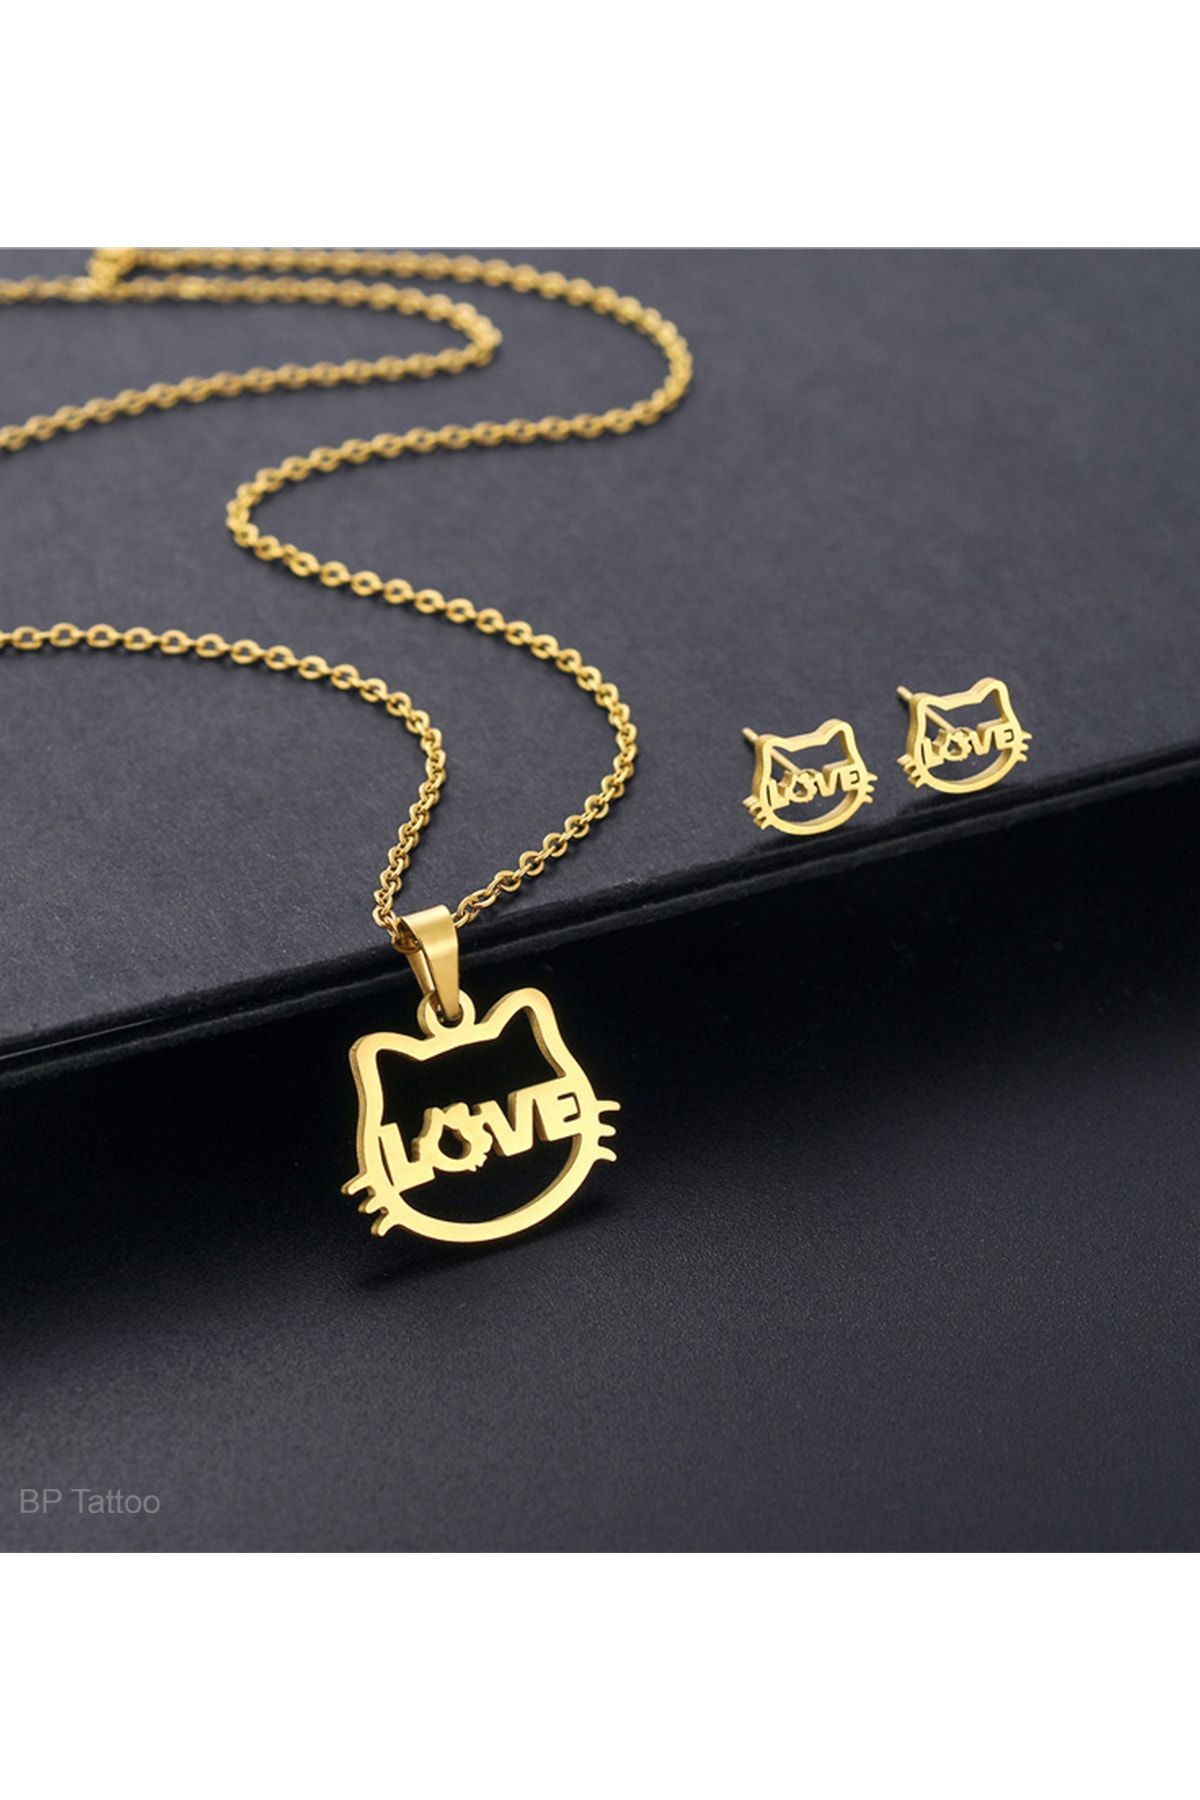 BP Tattoo Love Yazılı Kedi Küpe Ve Kolye Set Paslanmaz Çelik Gold Takım